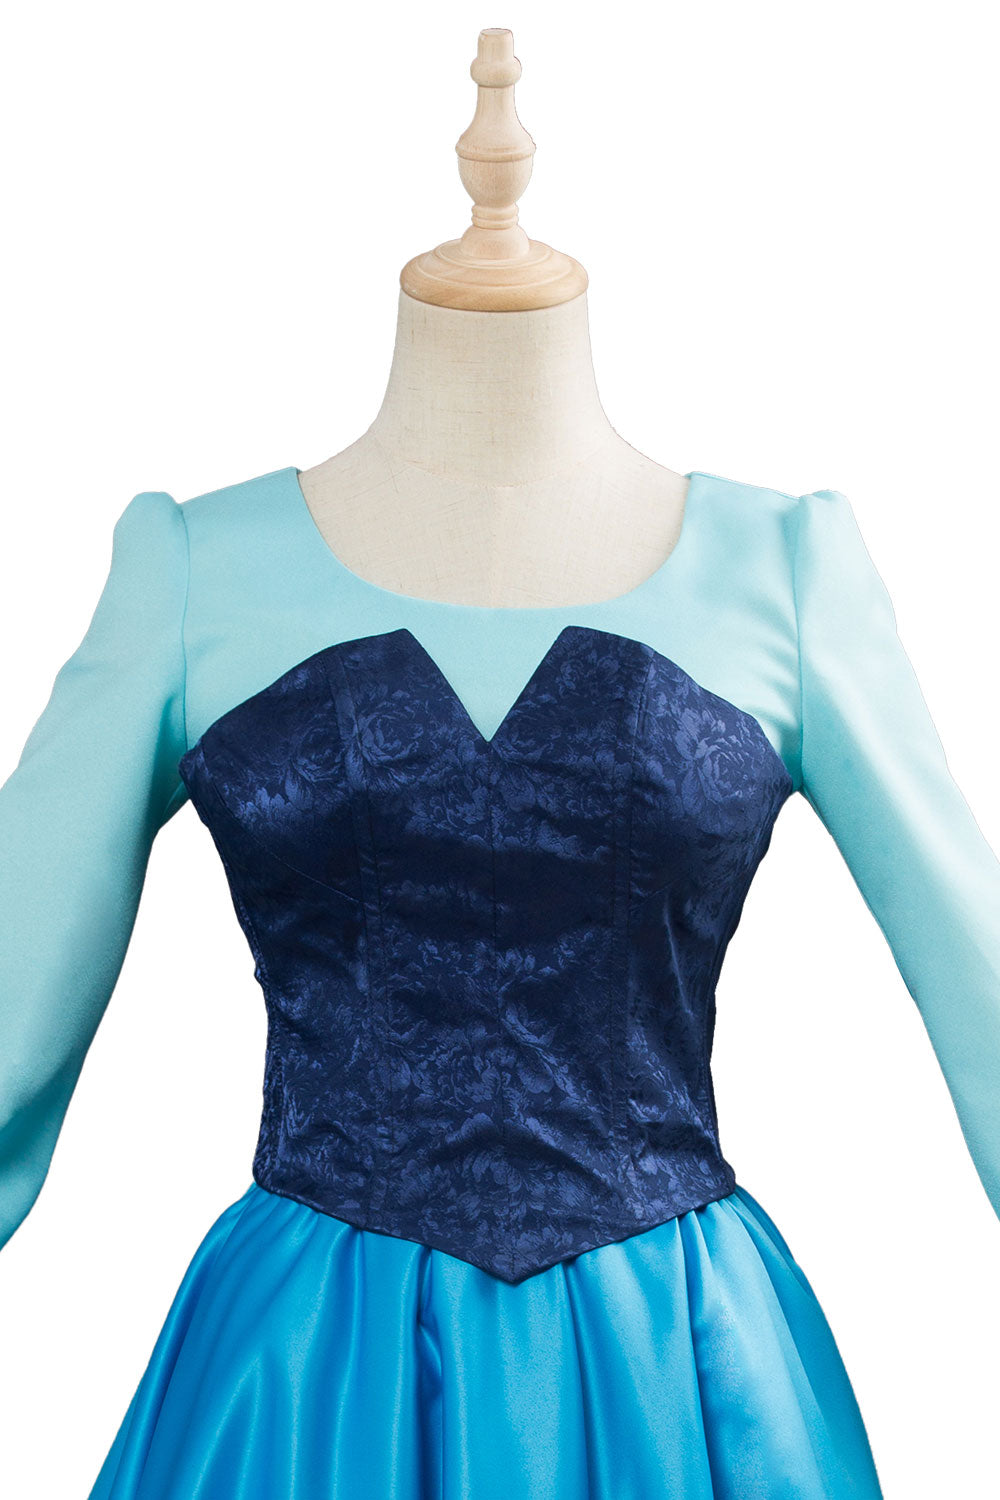 Arielle die Meerjungfrau Kleid The Little Mermaid Dress Cosplay Kostüm Blau Kleid